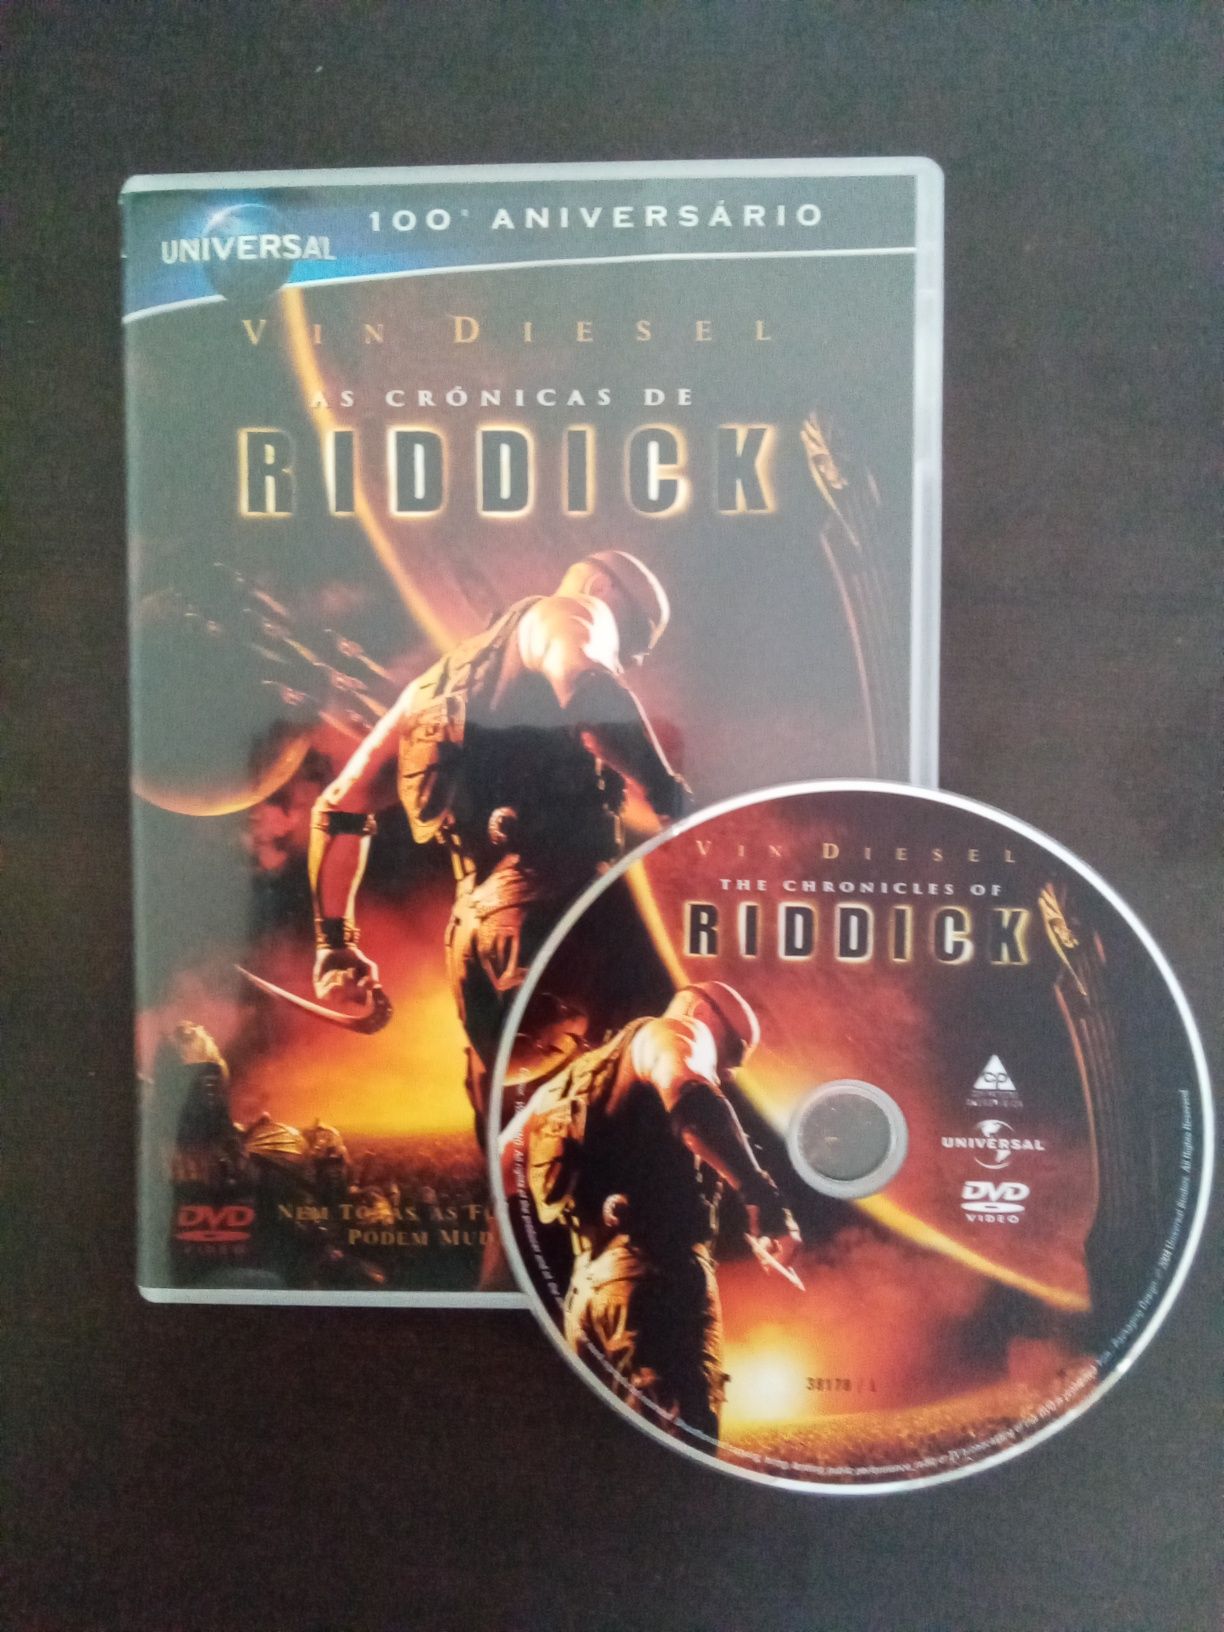 As Crónicas de Riddick